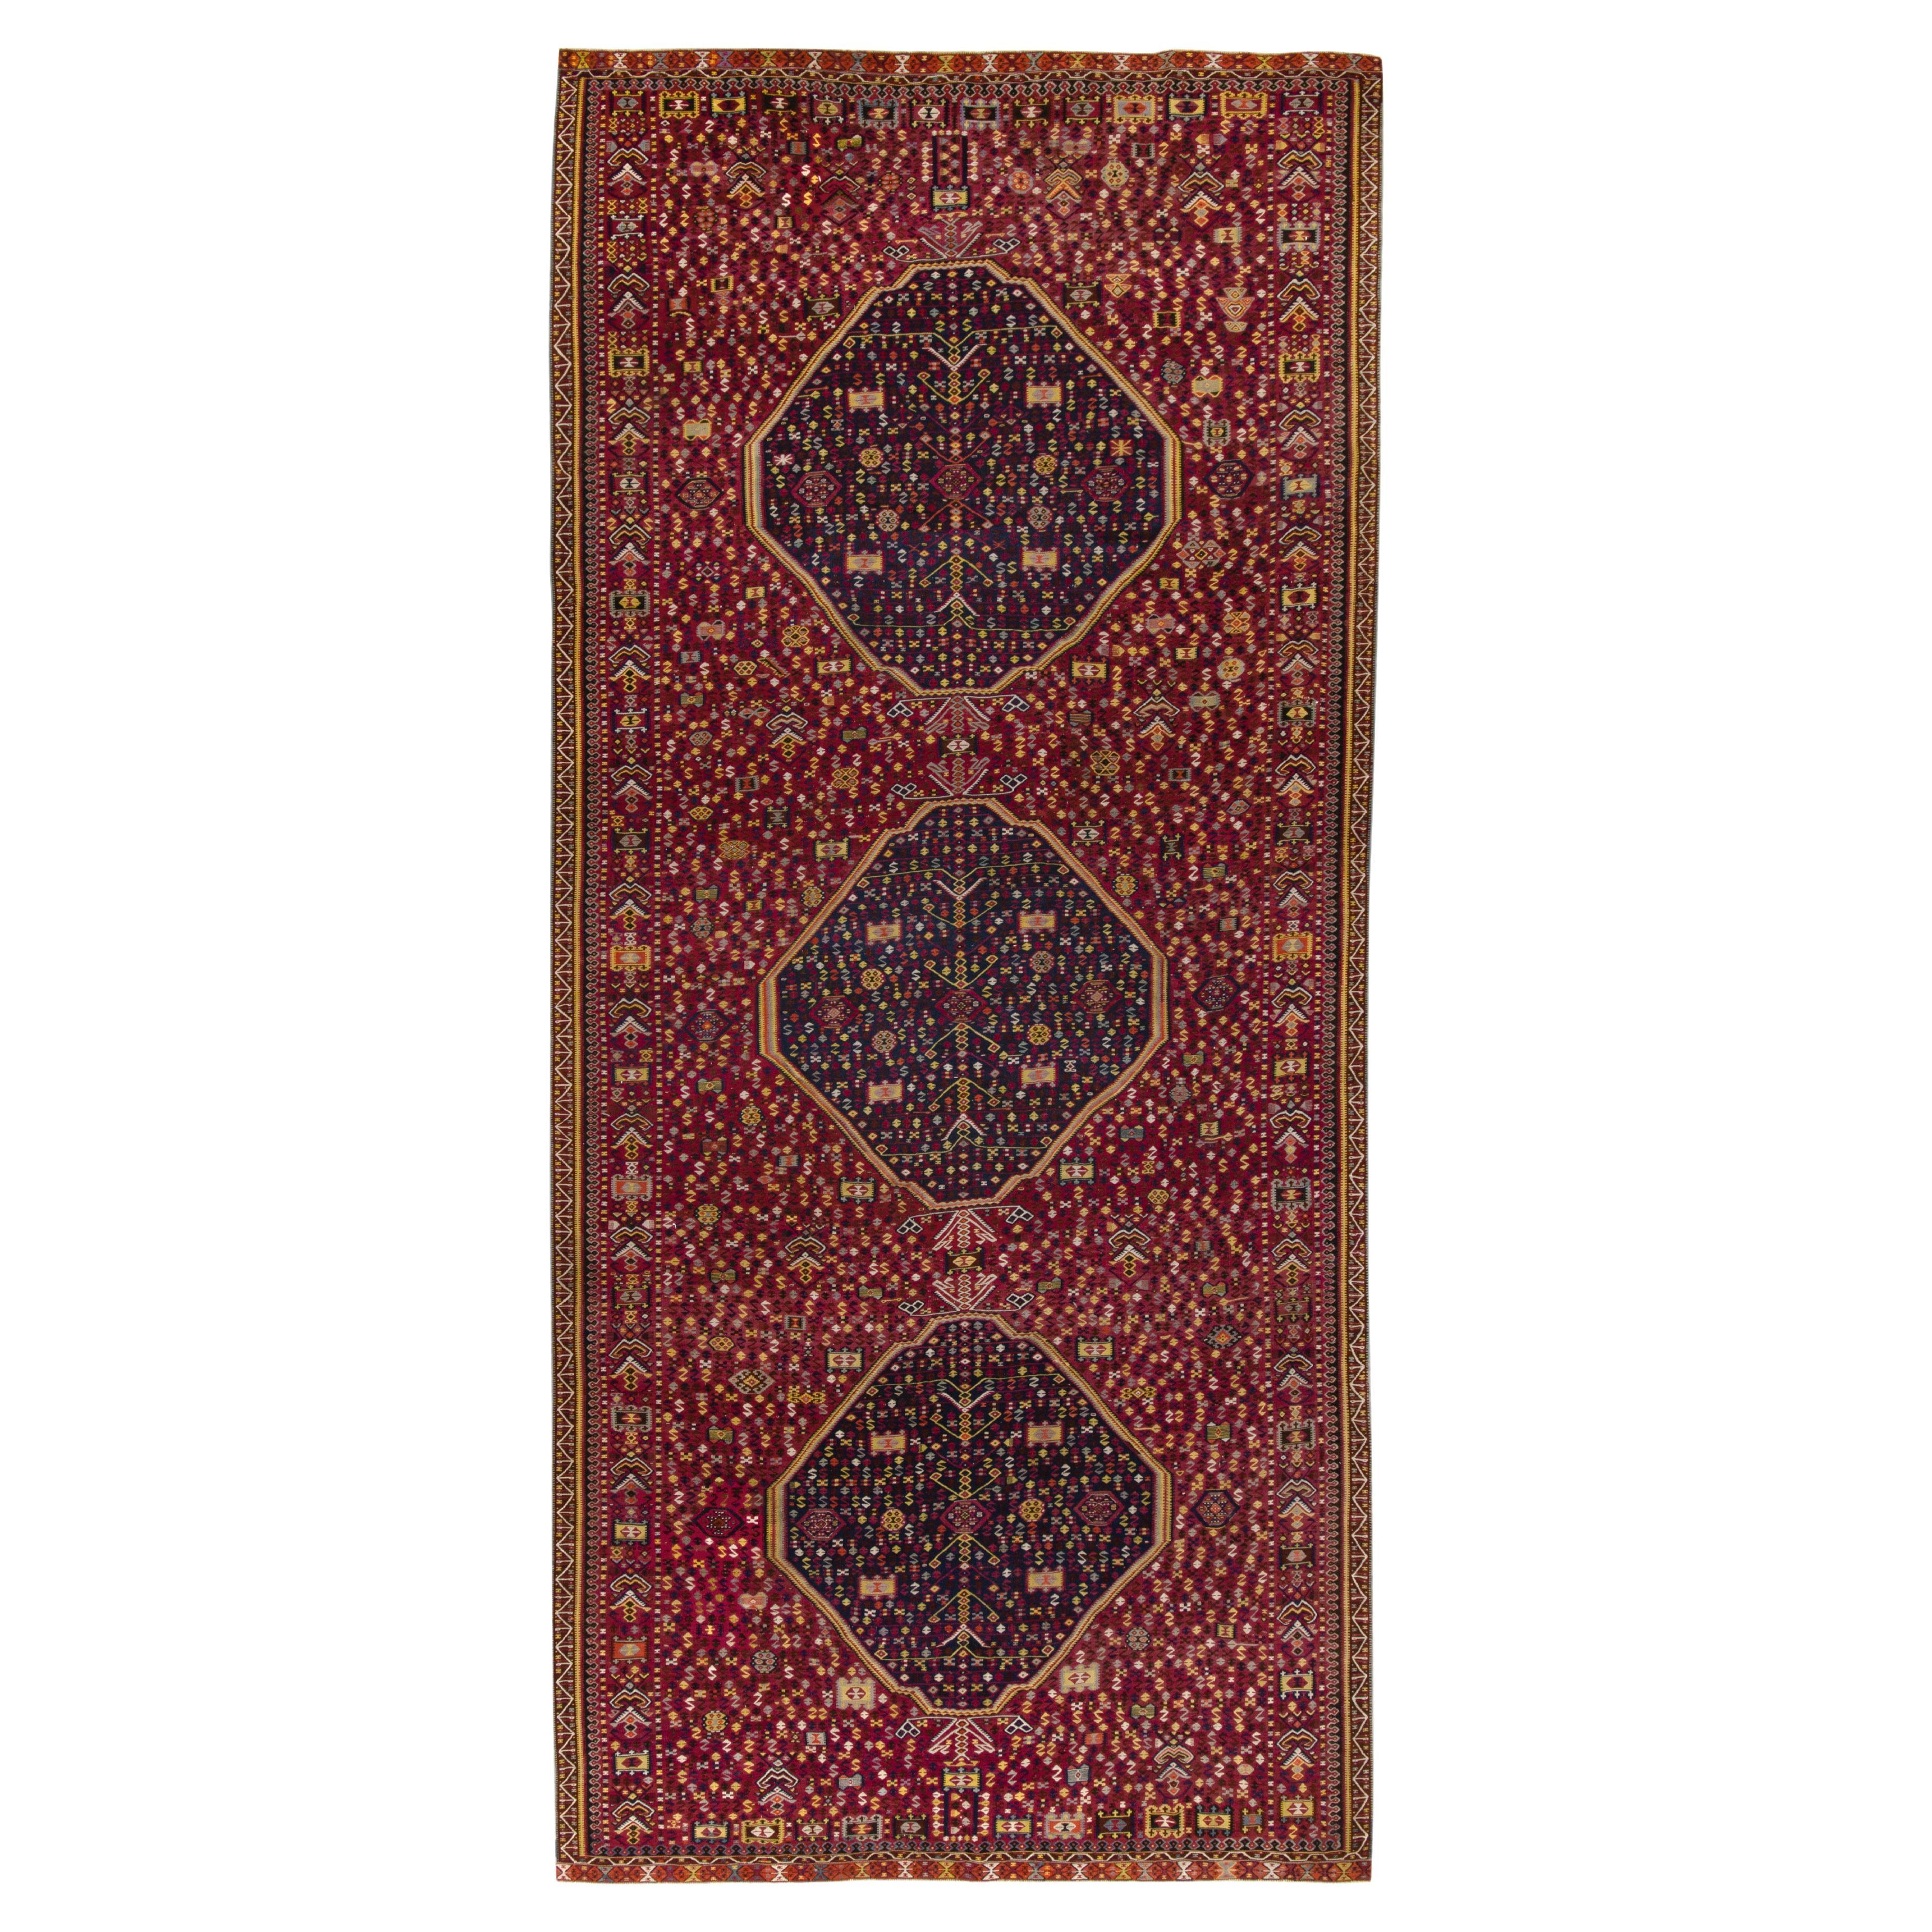 Handwoven Vintage Turkish Kilim Rug in Maroon Geometric Pattern by Rug & Kilim